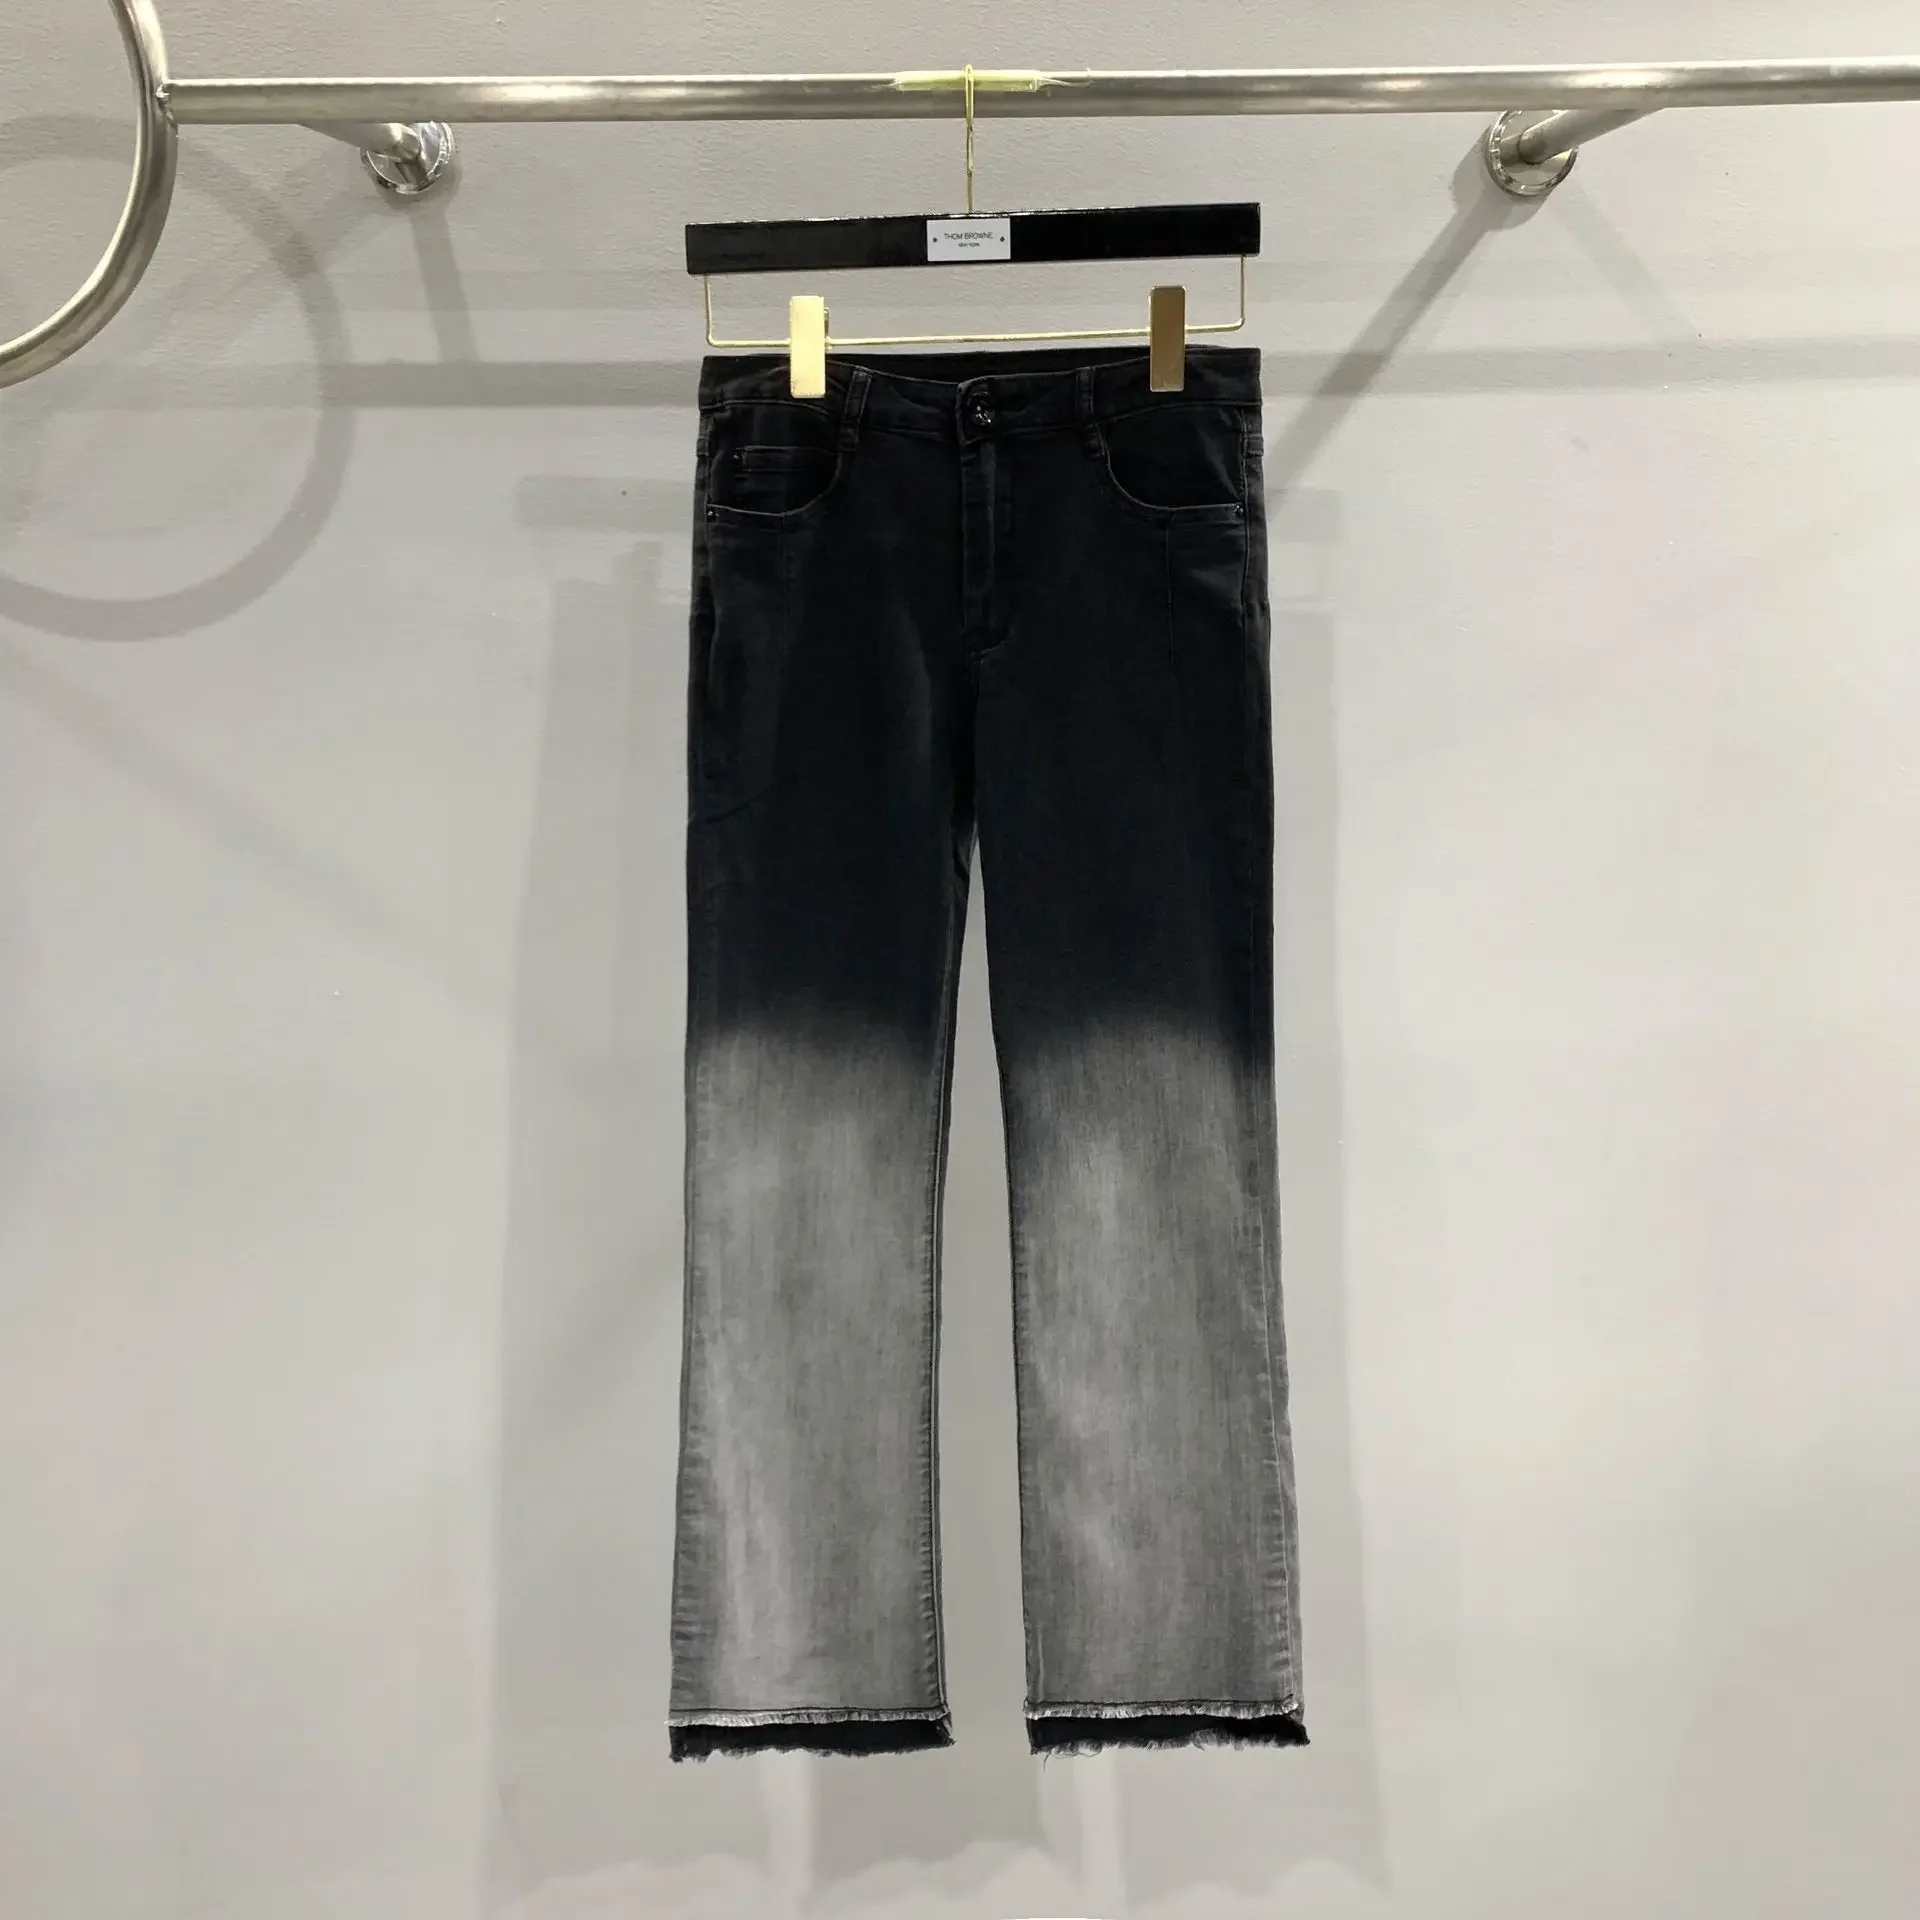 

Модные джинсы Ric, весенние женские брюки в стиле High Street смешанных цветов, женские брюки с эффектом потертости, черные, серые градиентные брюки